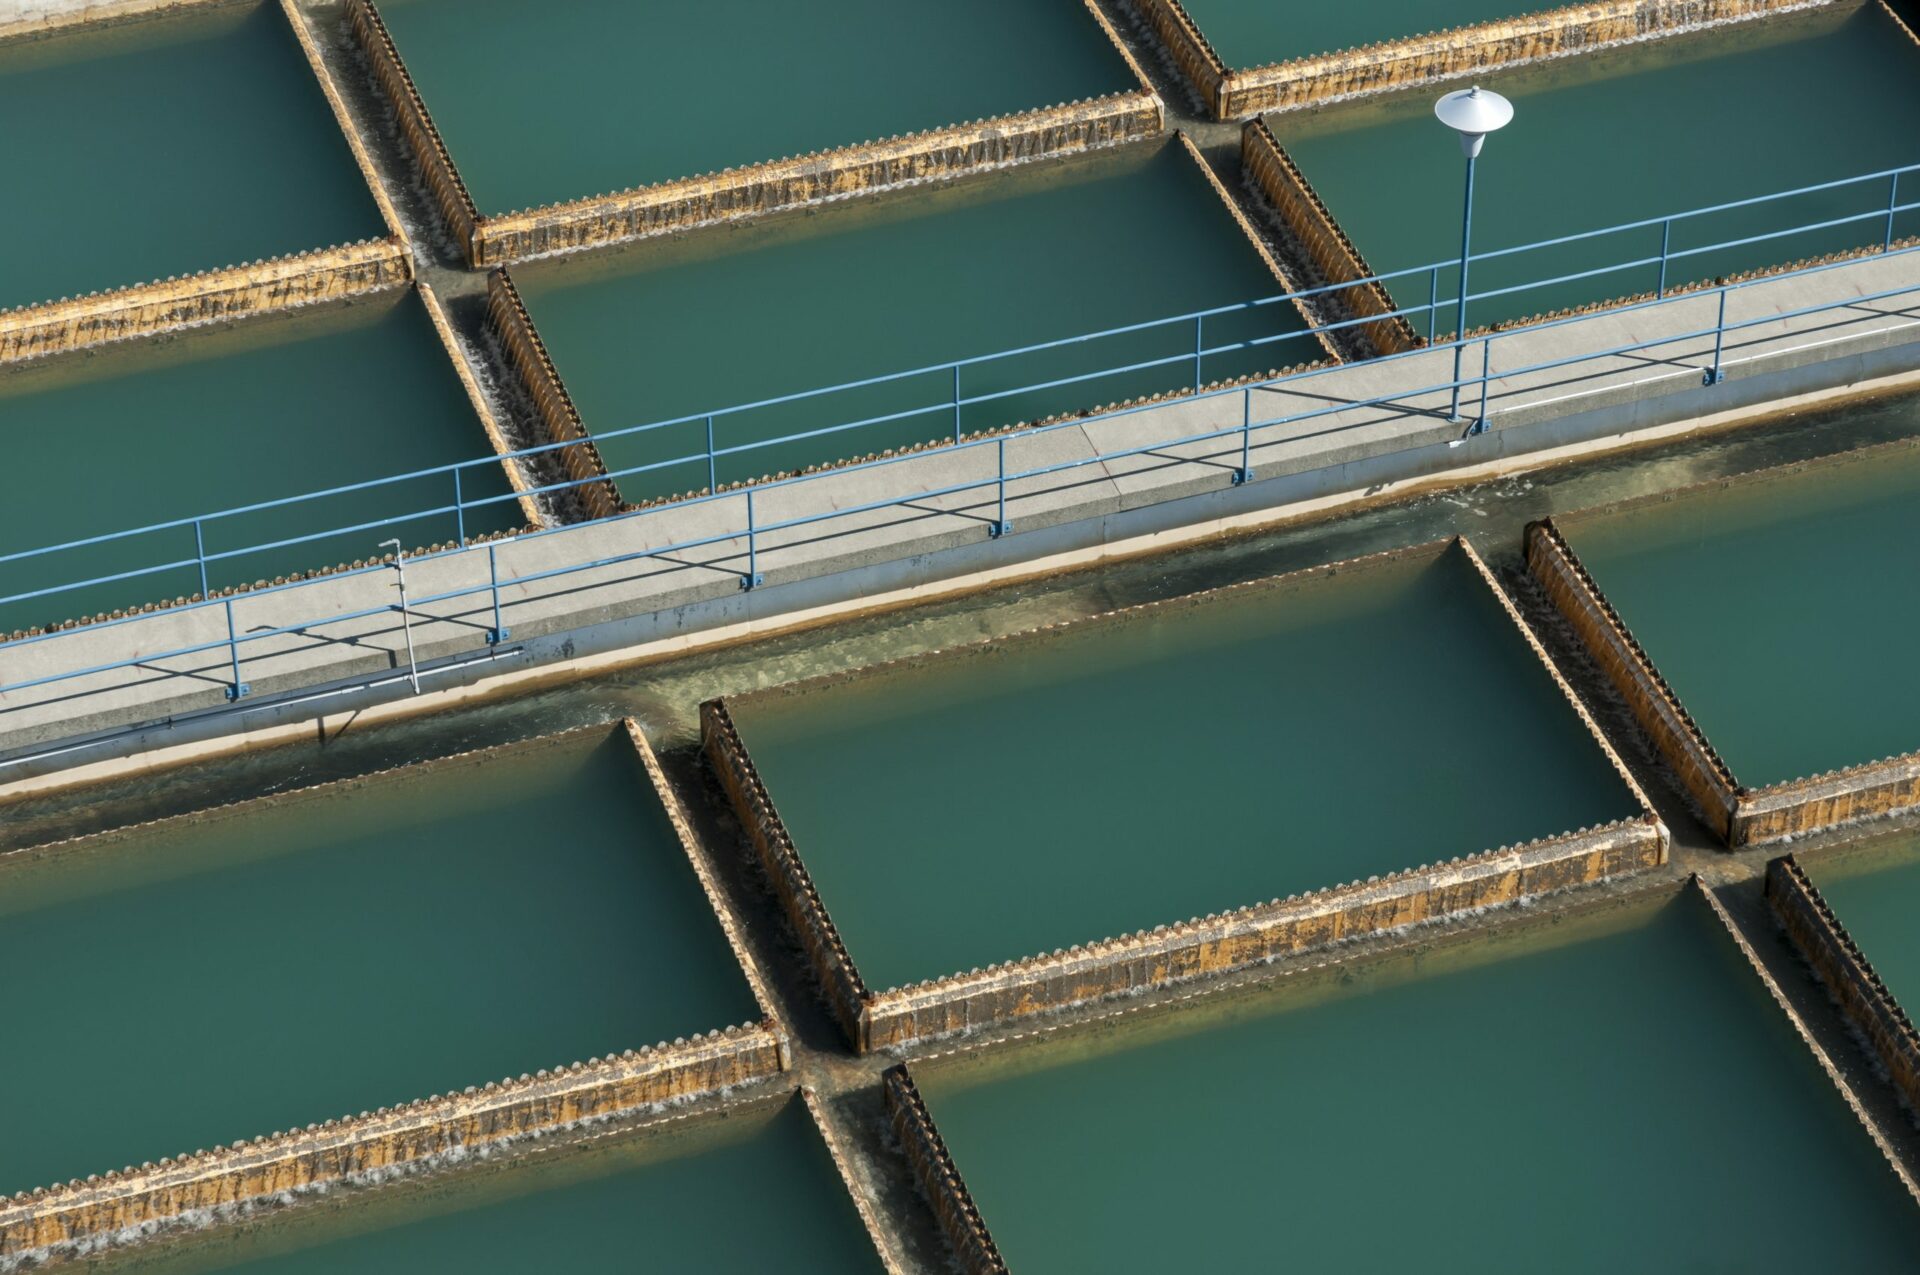 Flygbild av gångväg över vattenreningstankar 2022 03 04 02 32 21 utc skalenlig